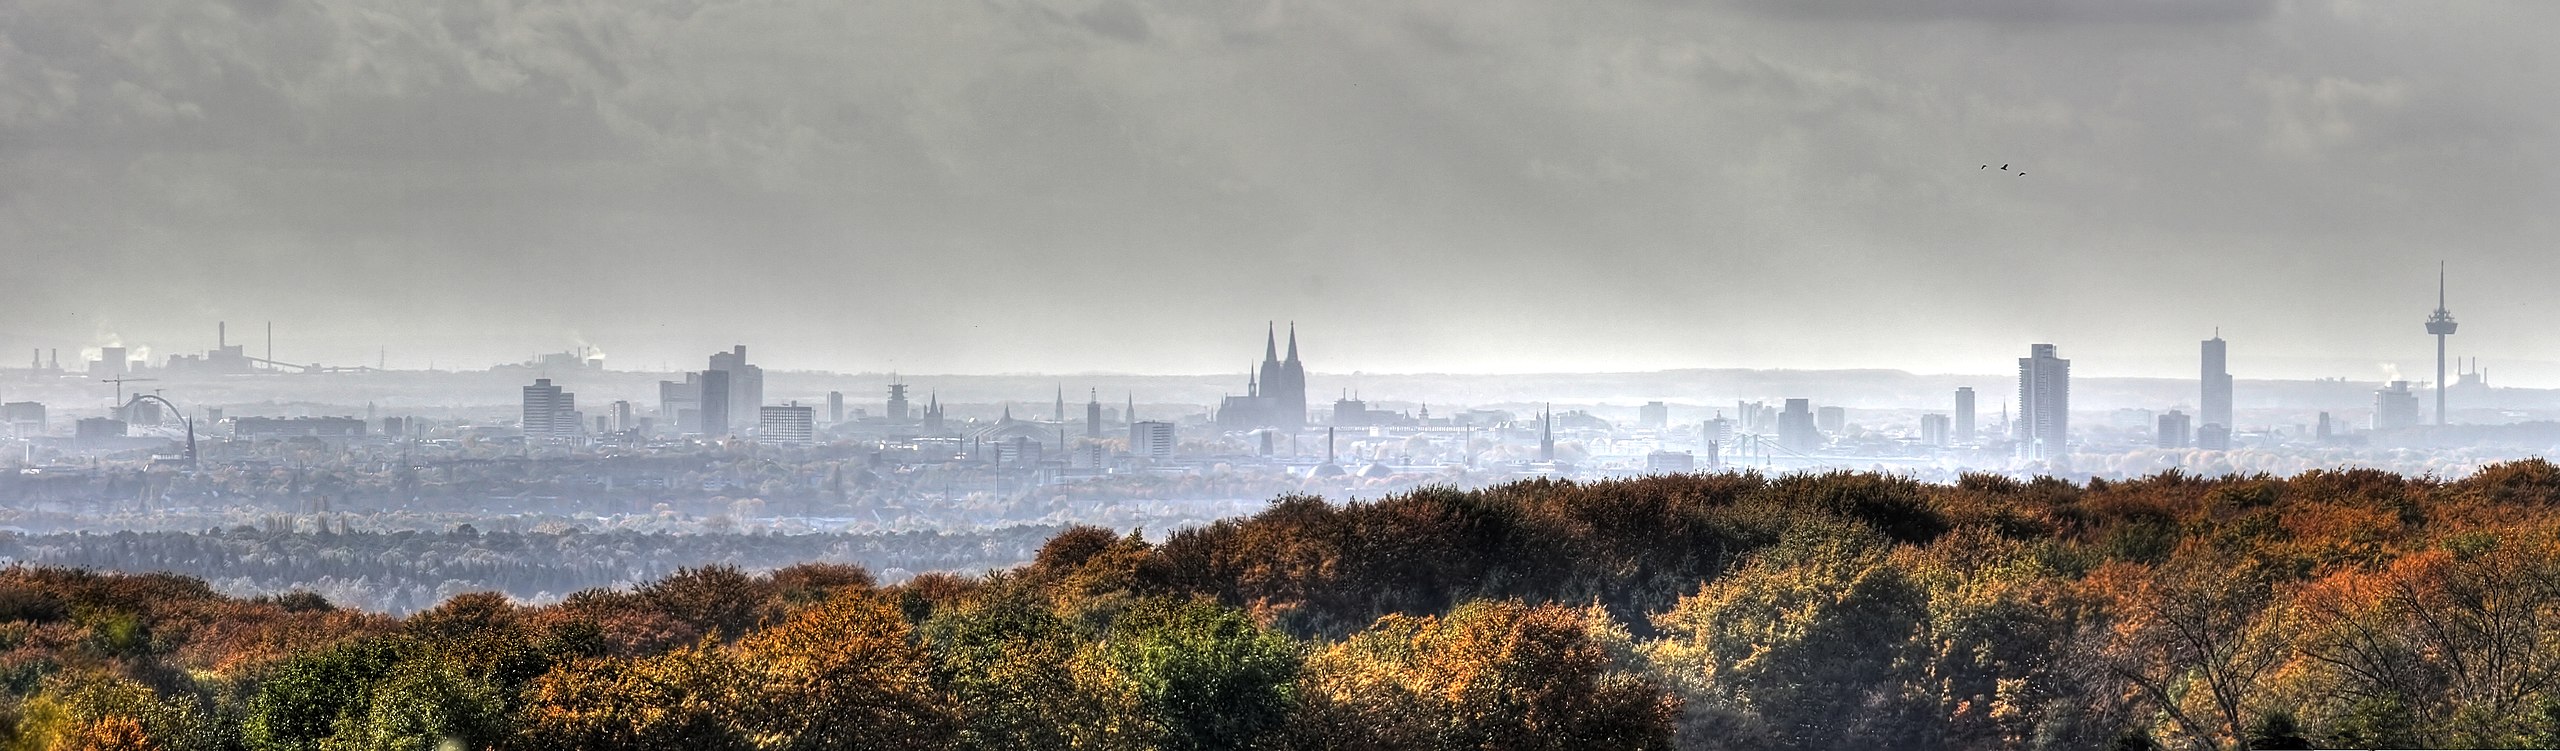 sehr breites Panorama der Stadt Köln, die im Regenwetter grau aussieht. Davor herbstlich gefärbte Bäume.